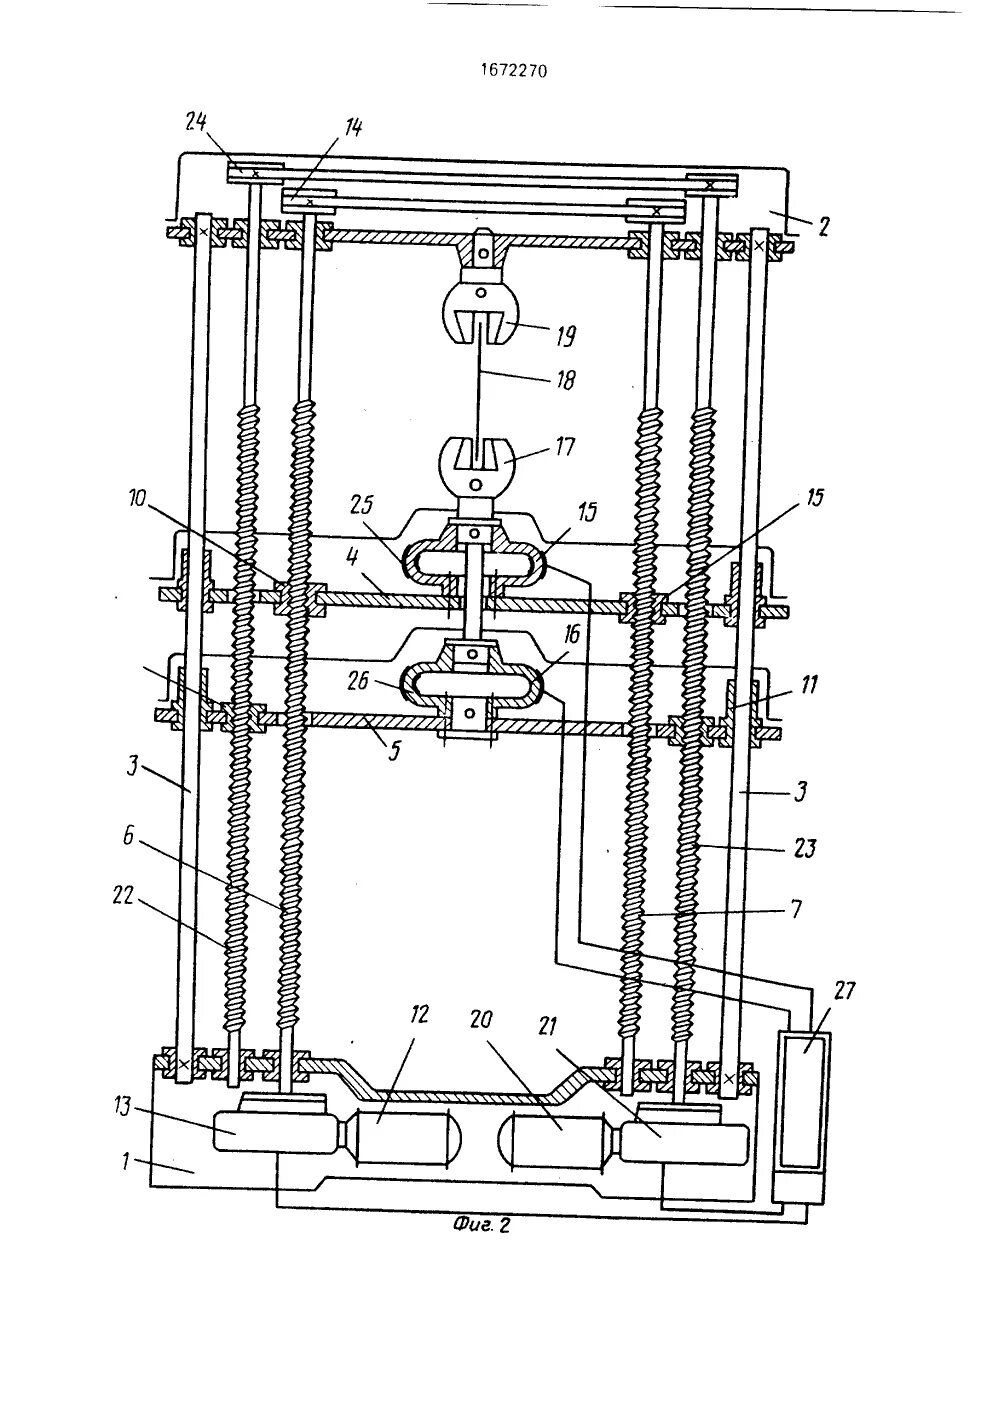 Испытательная установка для испытаний на растяжение. Сервогидравлическая испытательная машина Hofmann 209. Схема прибора для испытаний на растяжение. Машина для испытания на сжатие 1930 года элементы. Испытание на растяжение и сжатие